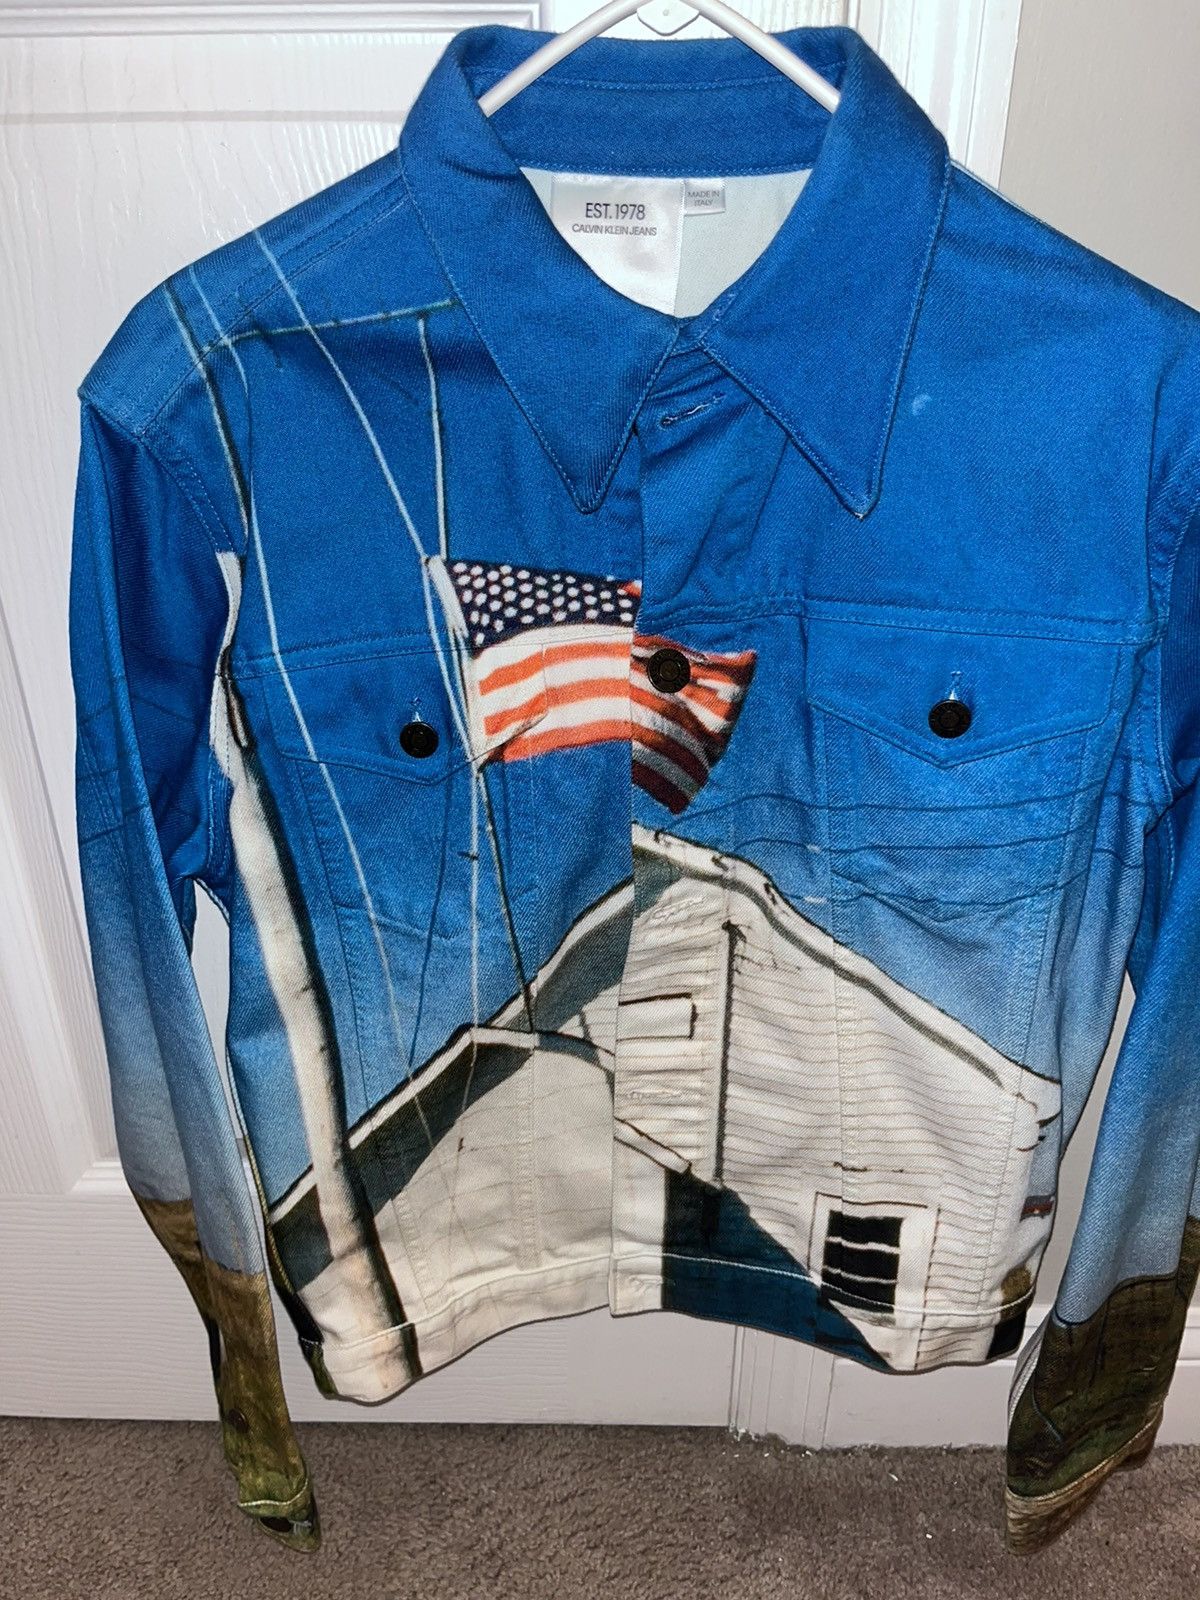 Calvin Klein 205W39NYC American Landscape Denim Trucker Jacket (M